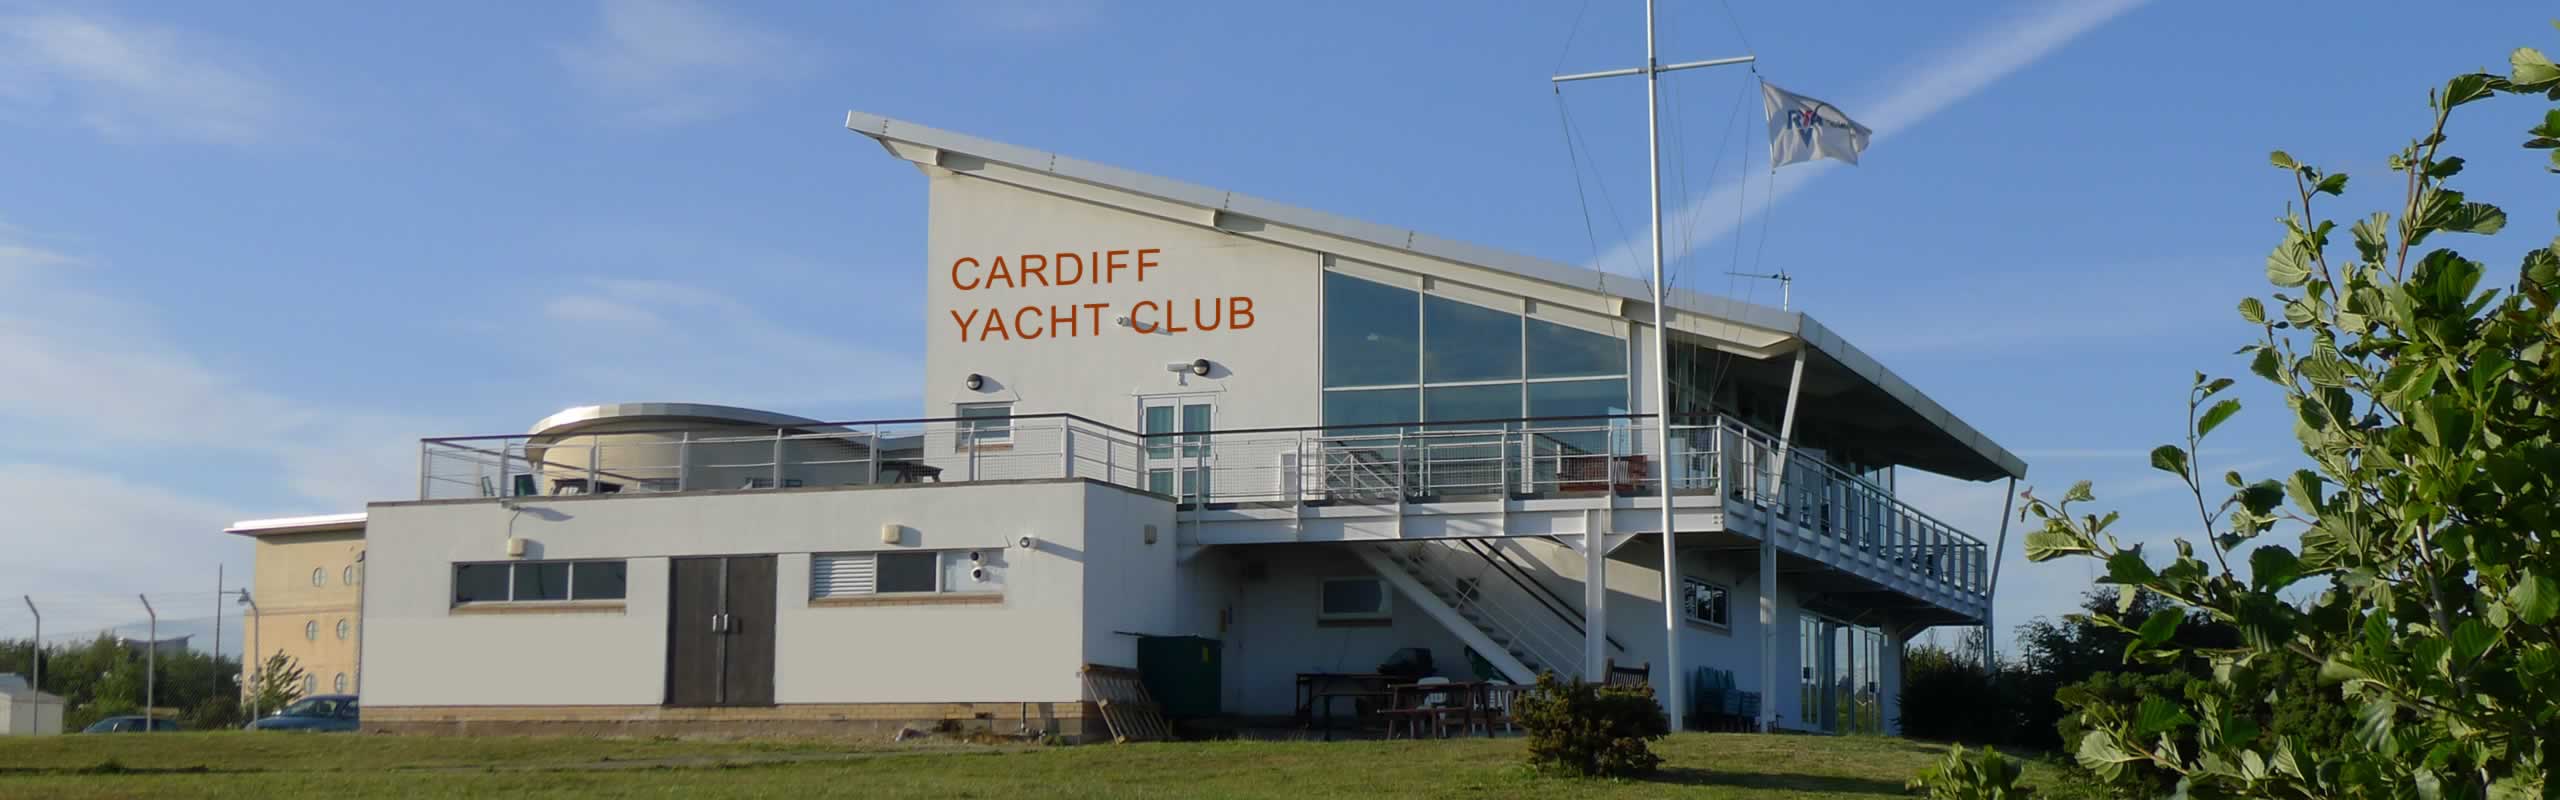 cardiff bay yacht club yacht club & sailing school